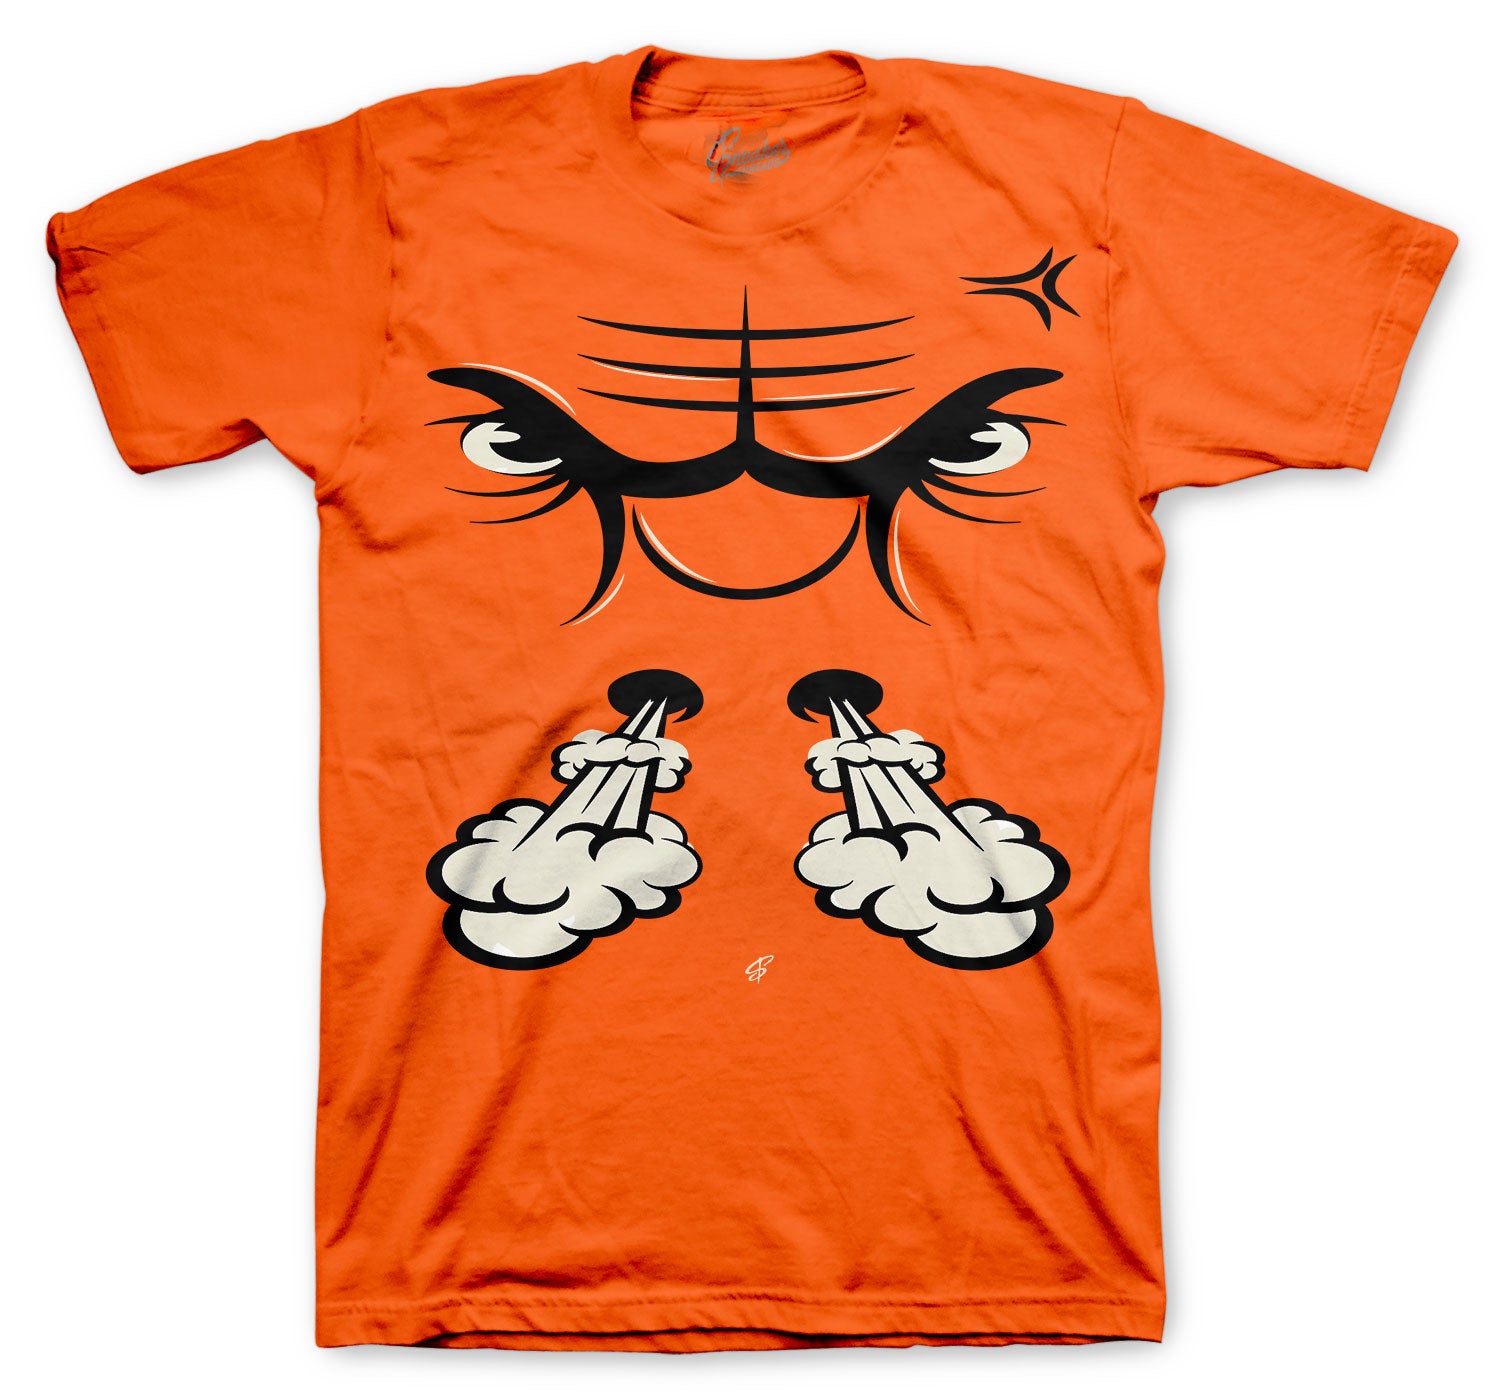 Jordan 1 Electro Orange Raging Face Shirt